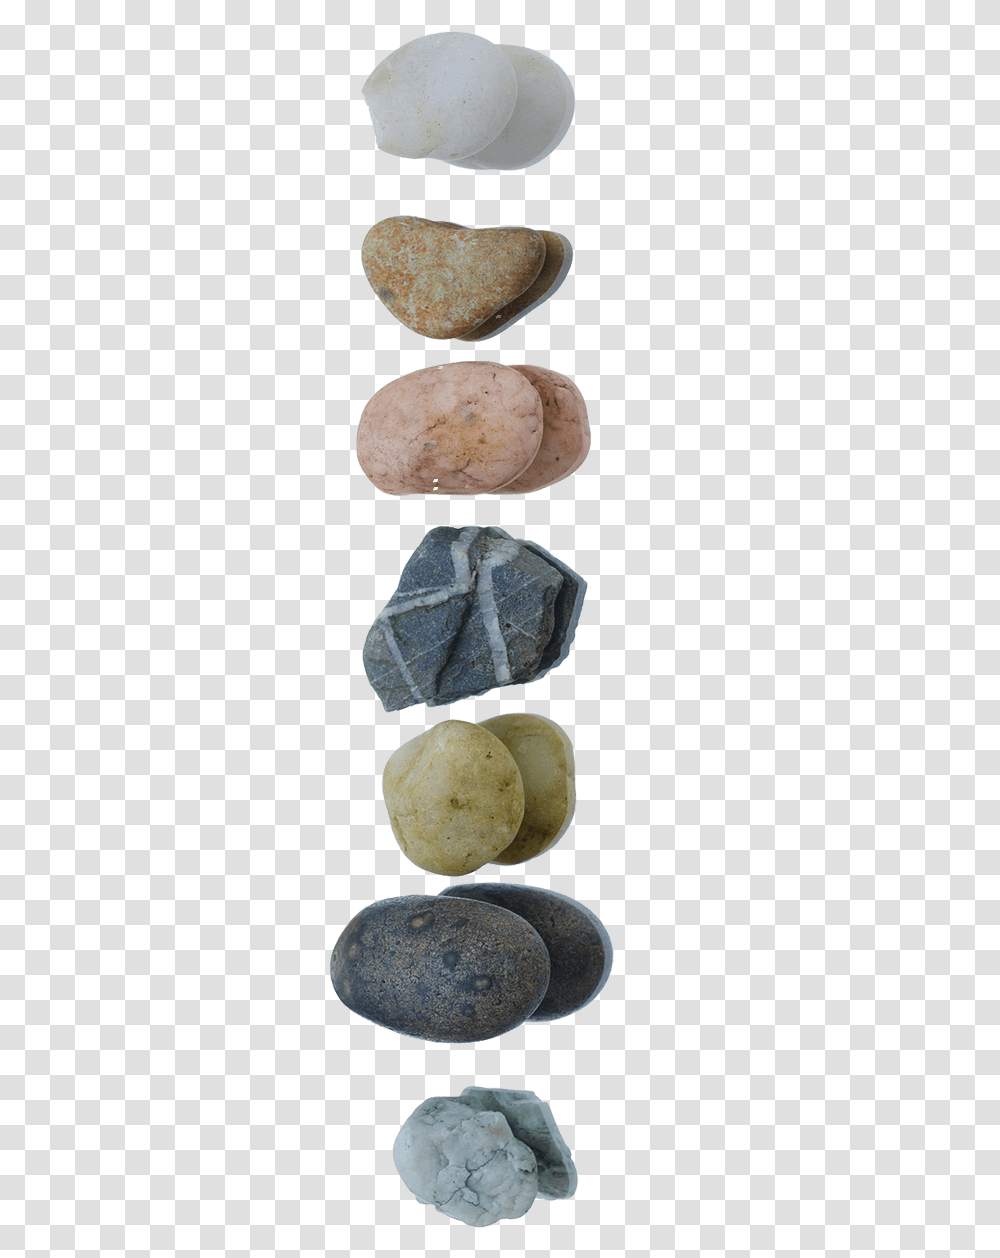 Stones Hardwood, Rock, Mineral, Crystal, Plant Transparent Png